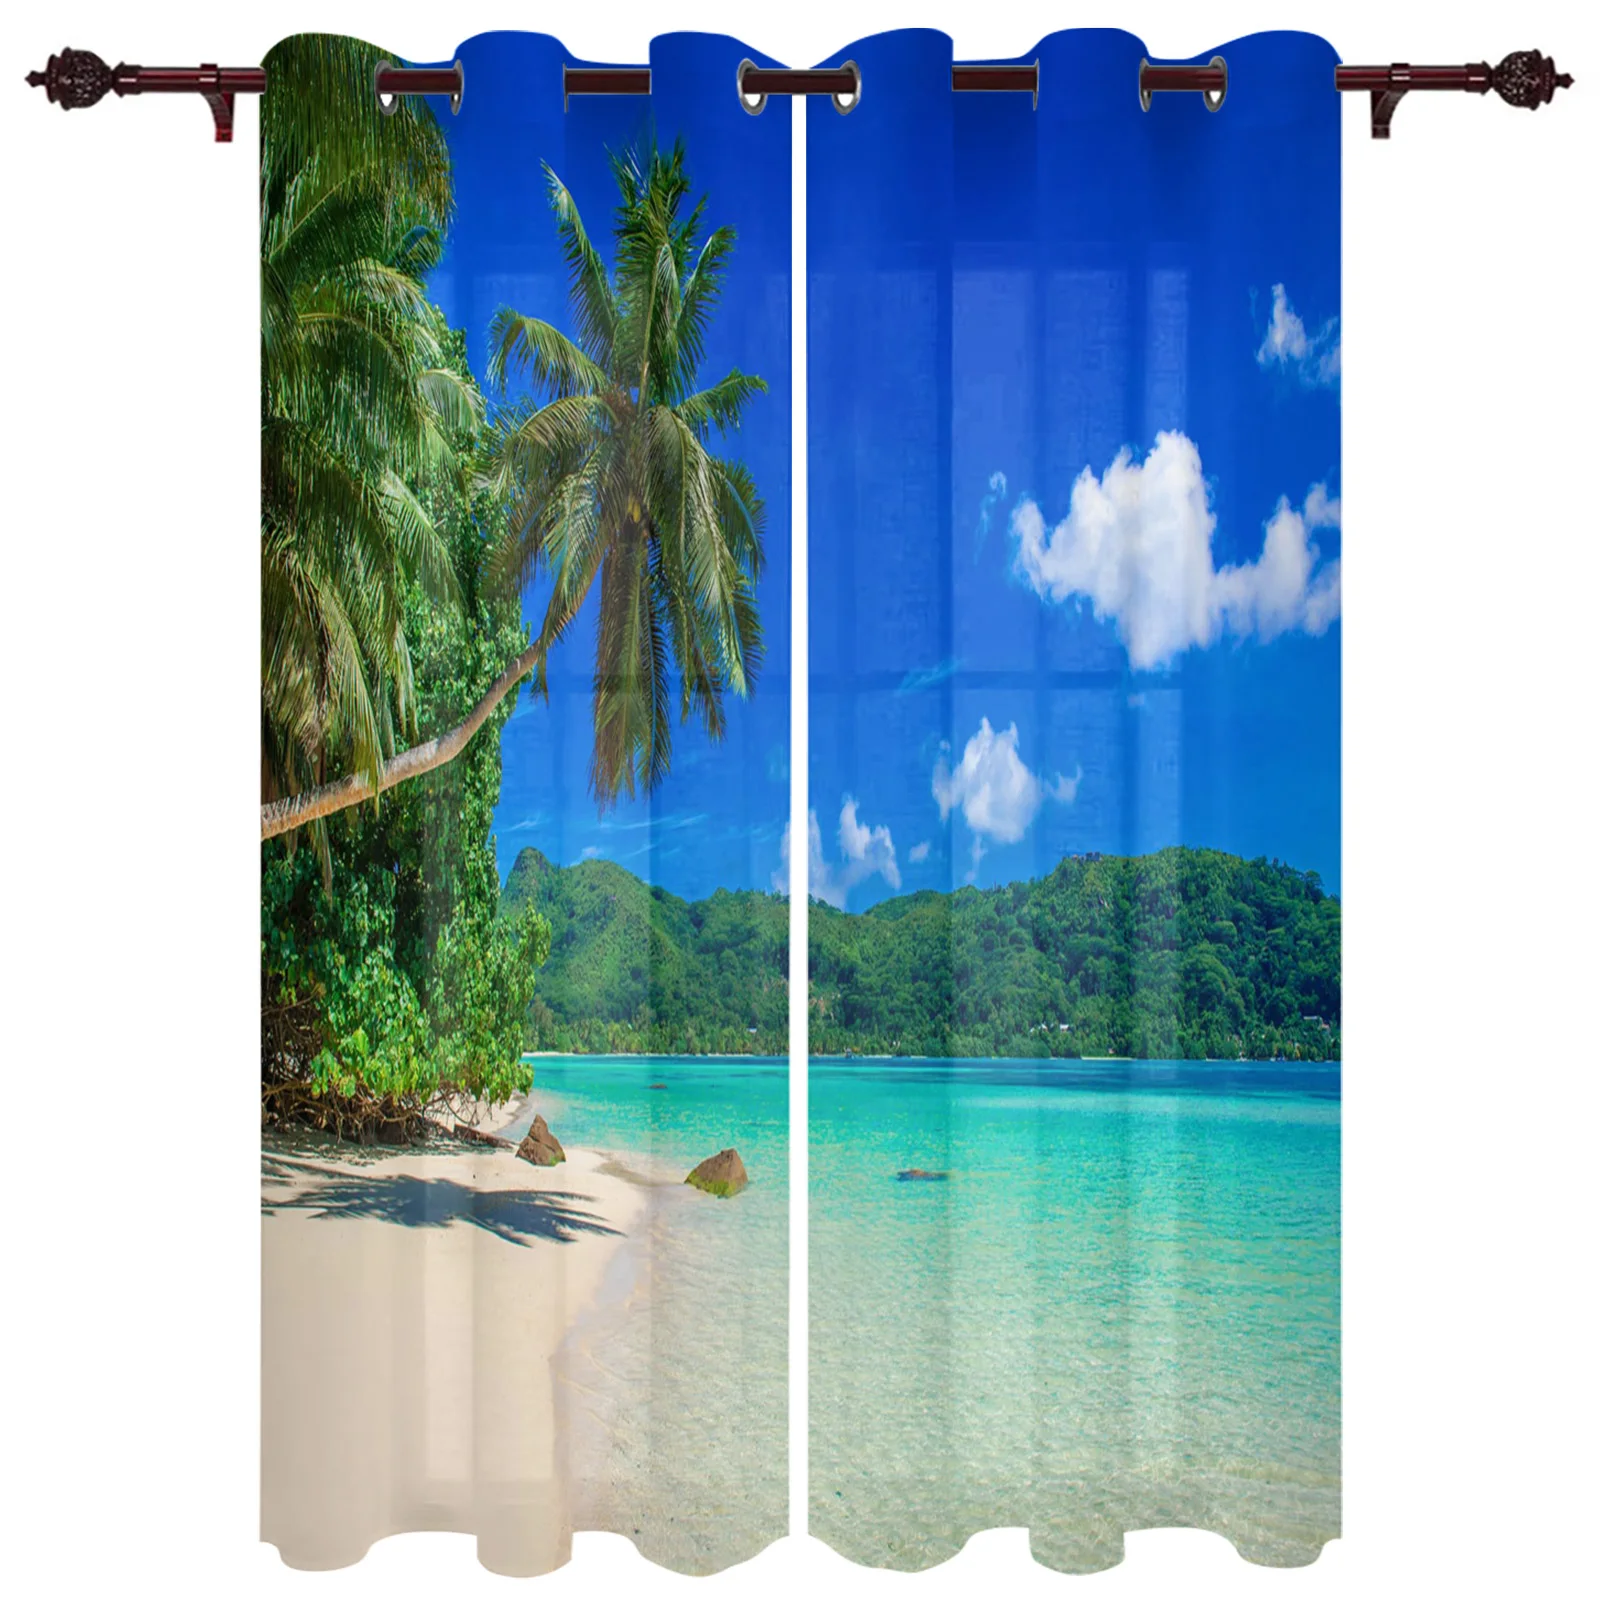  Cortinas hawaianas para cocina, árboles tropicales con  estampado de isla ventosa del océano, cortinas de café, gris y verde, juego  de cortinas de media ventana impresas para baño, bolsillo para barra